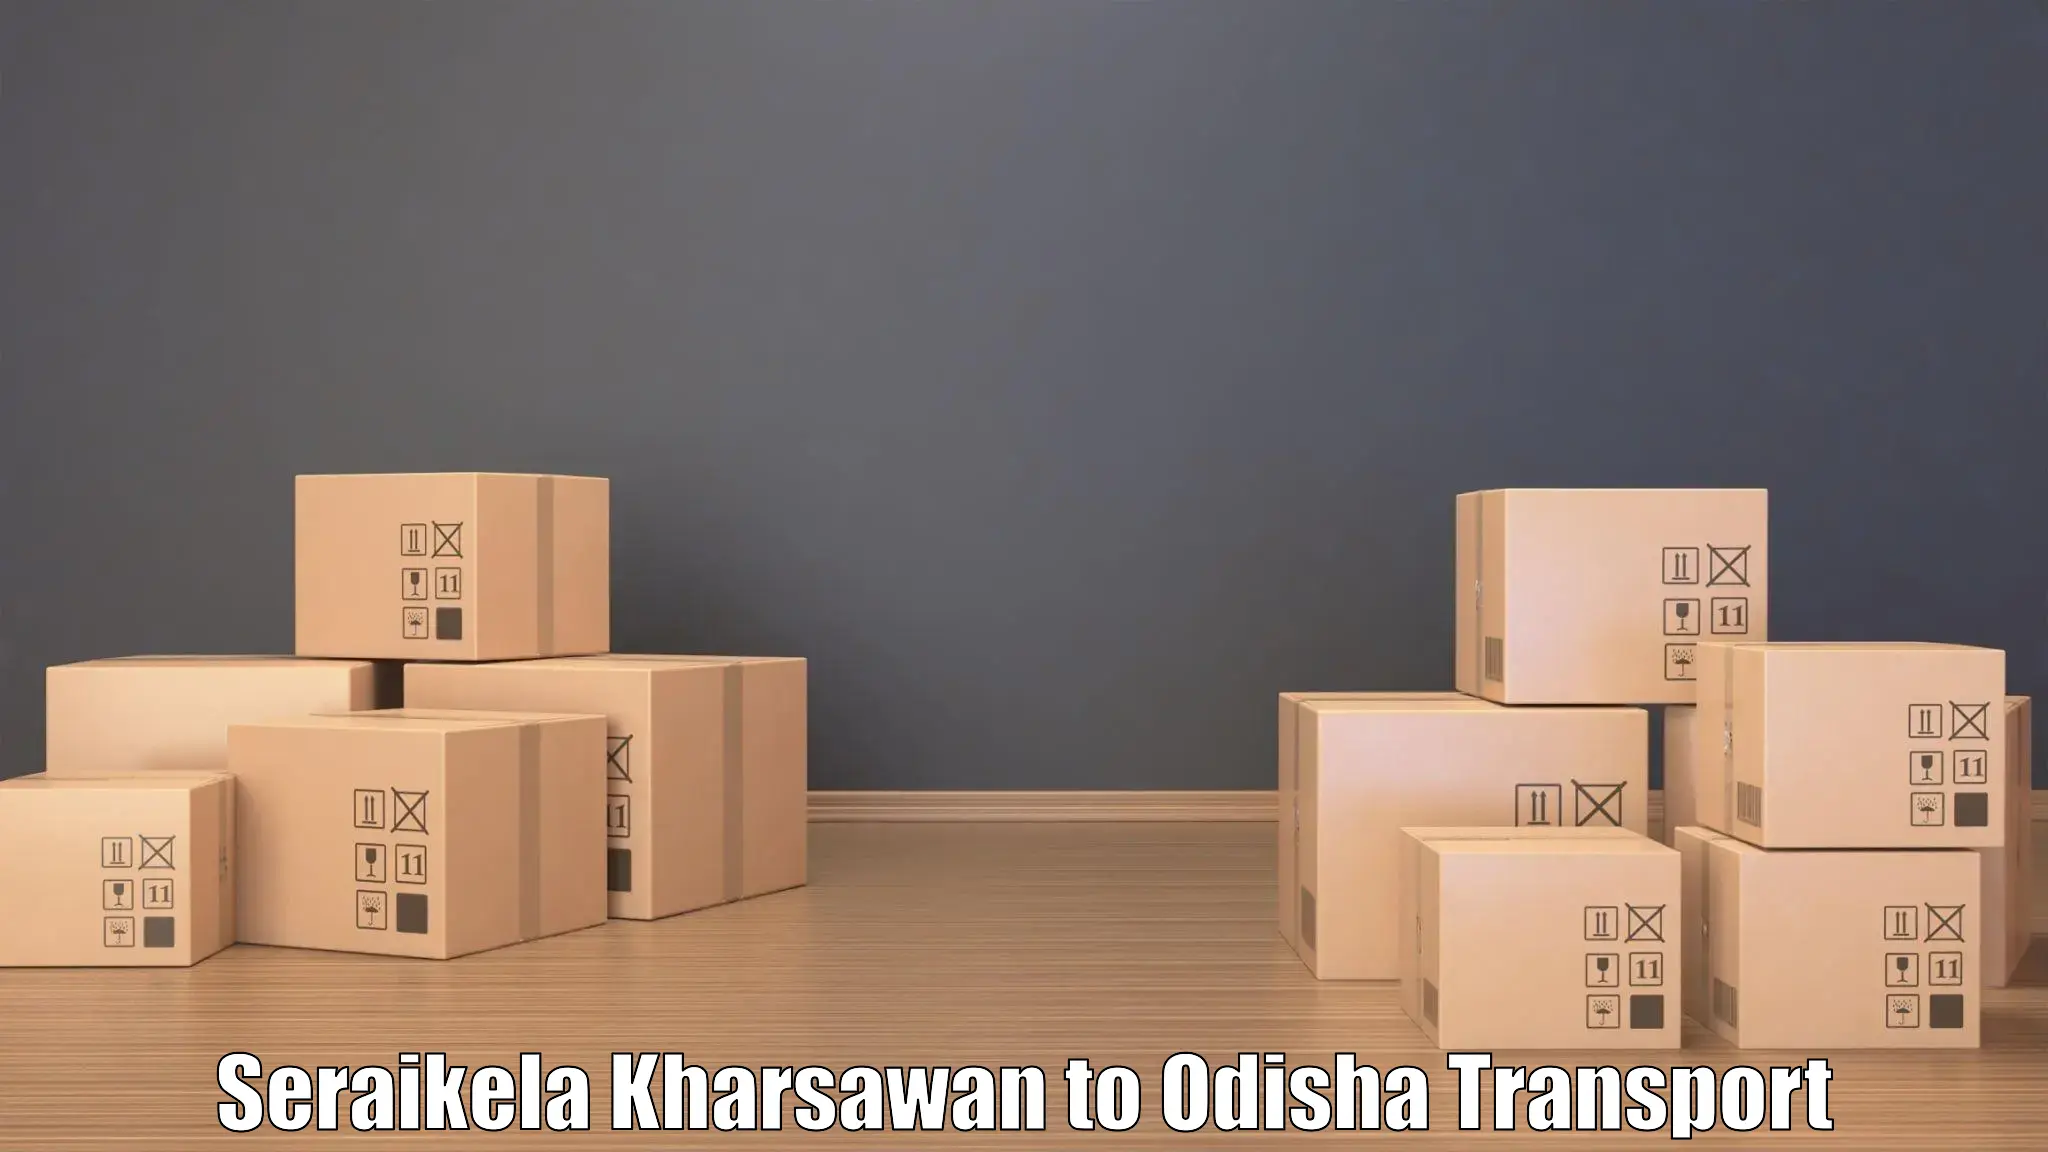 Interstate transport services Seraikela Kharsawan to Balimela